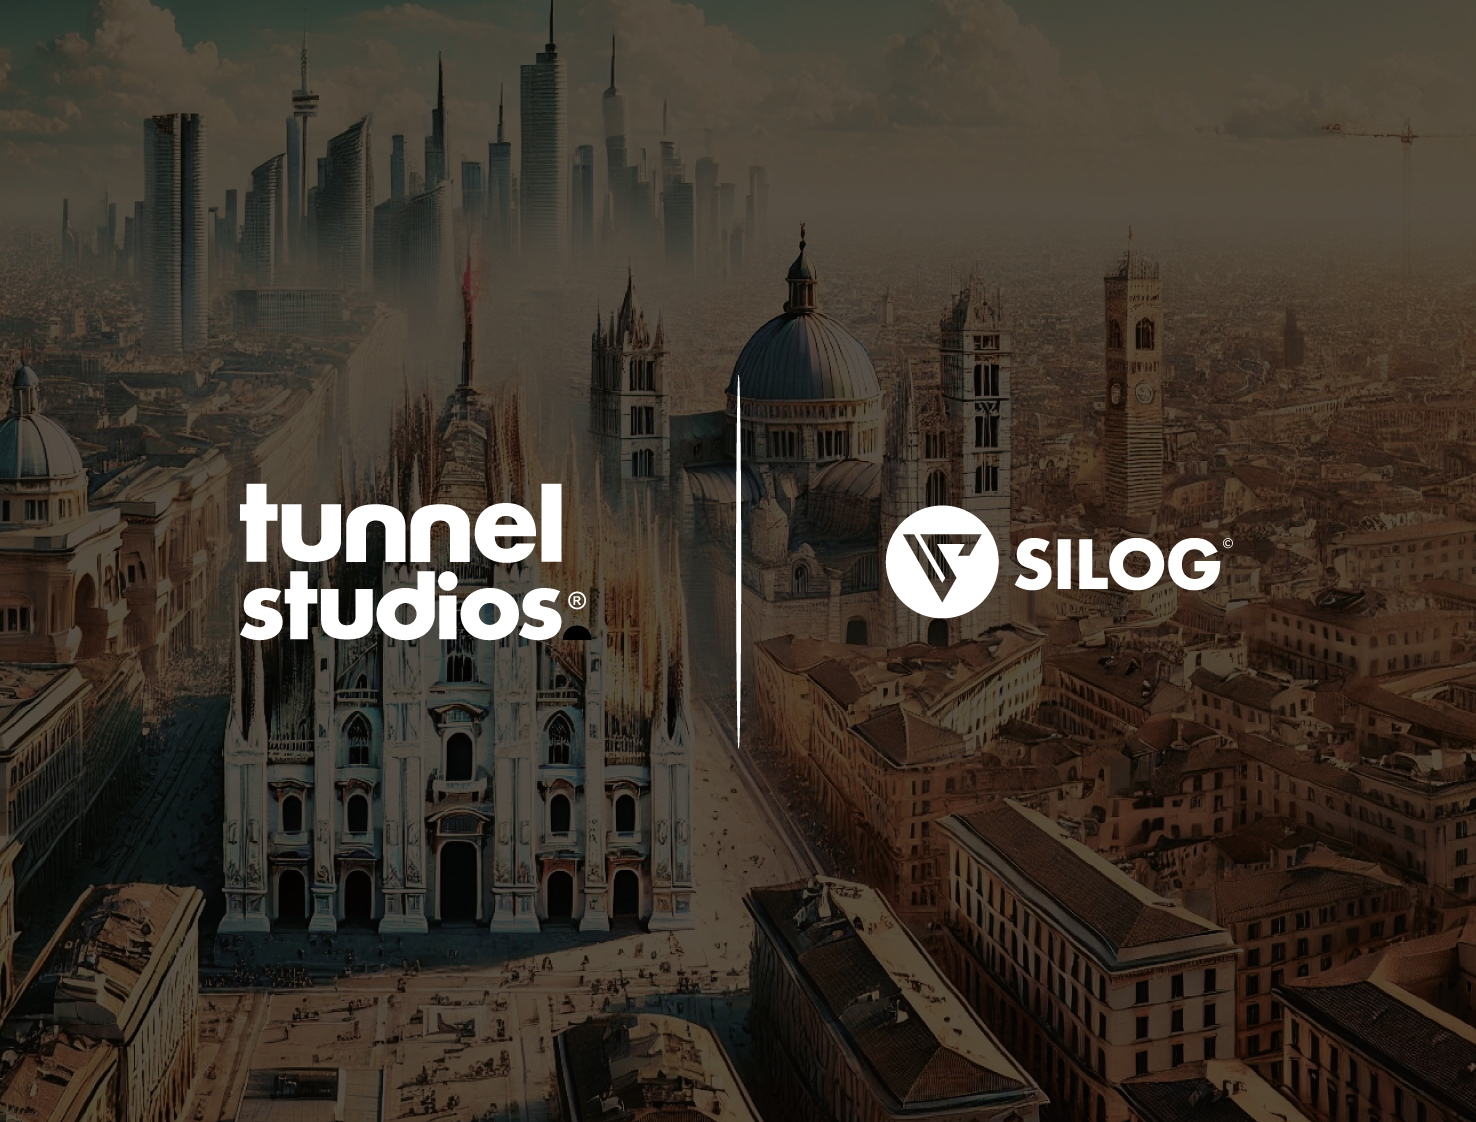 Tunnel Studios e Silog annunciano una partnership strategica per unire creatività e tecnologia.